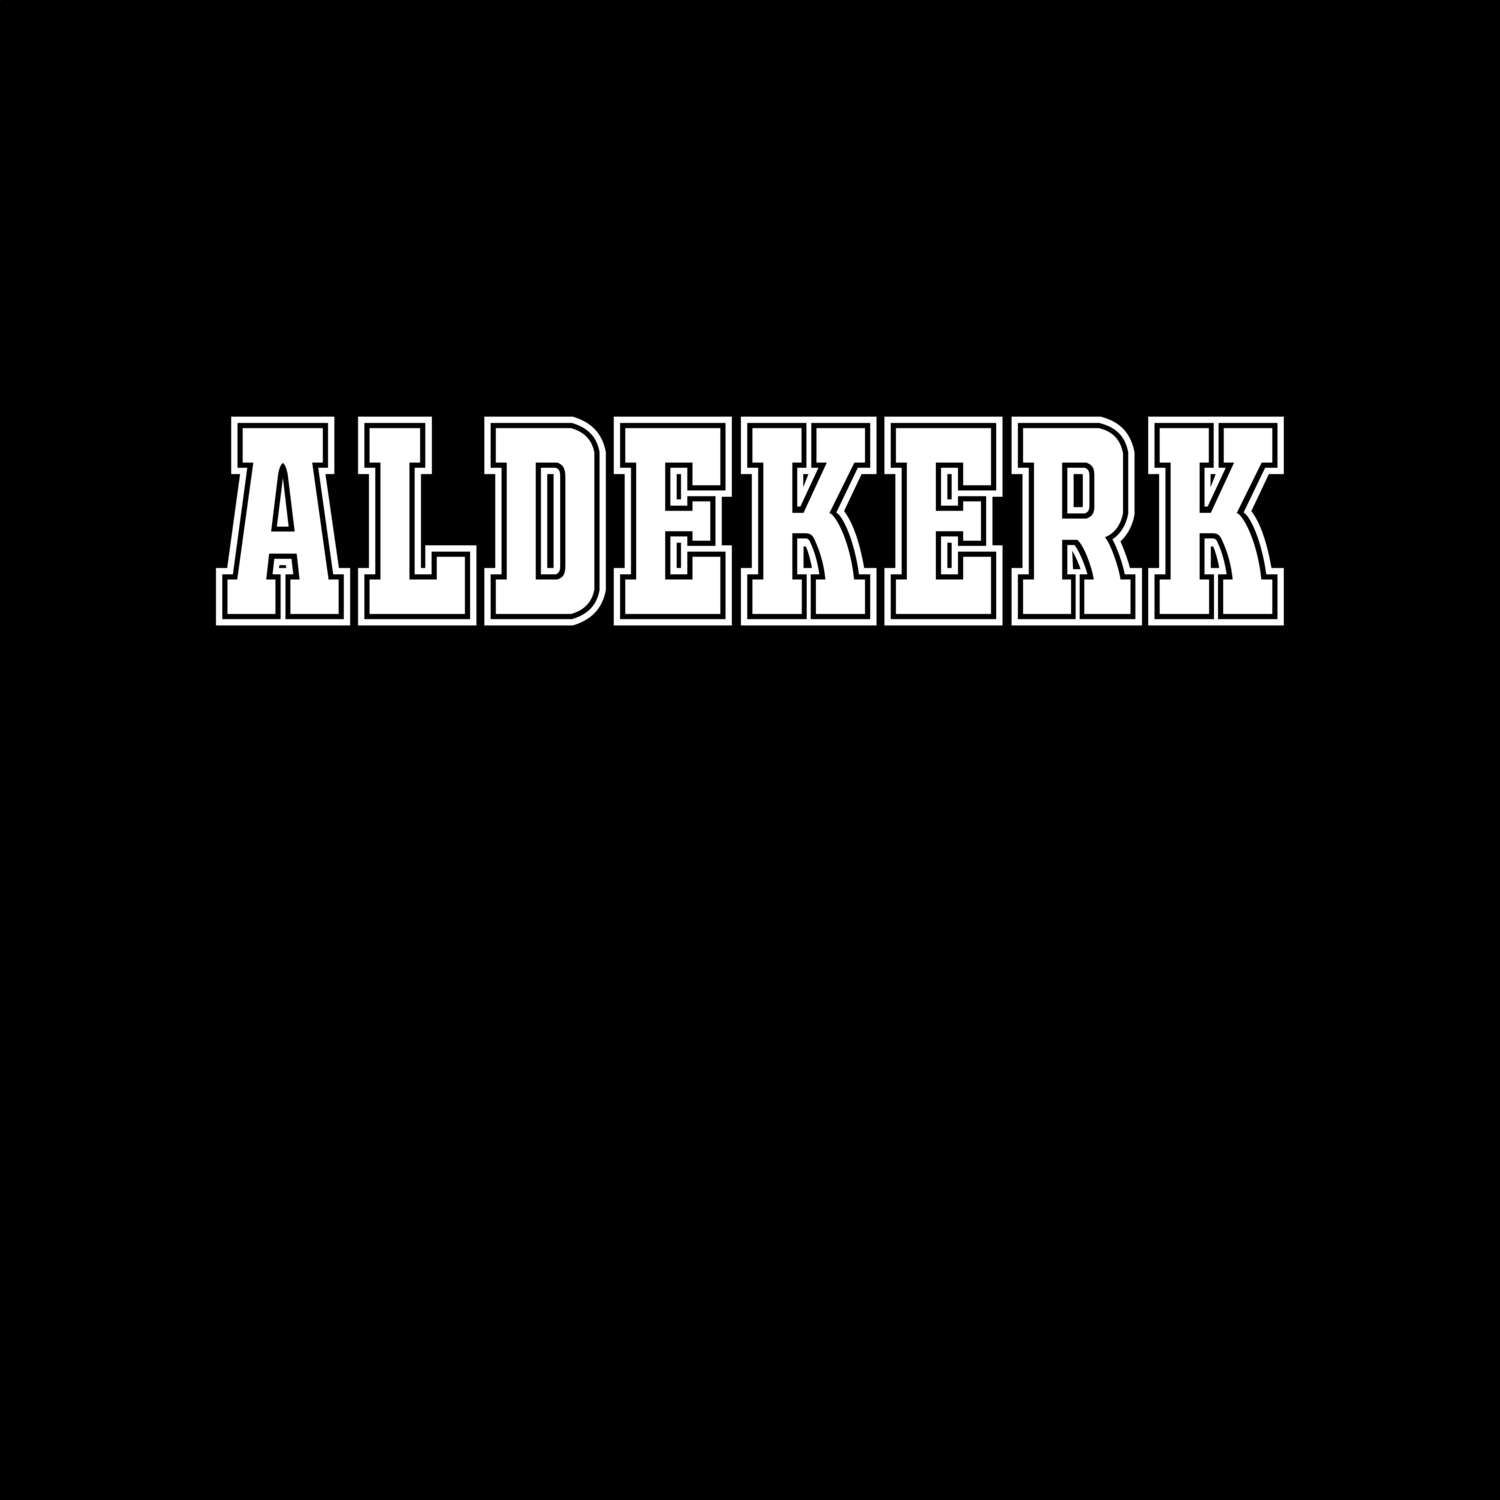 Aldekerk T-Shirt »Classic«